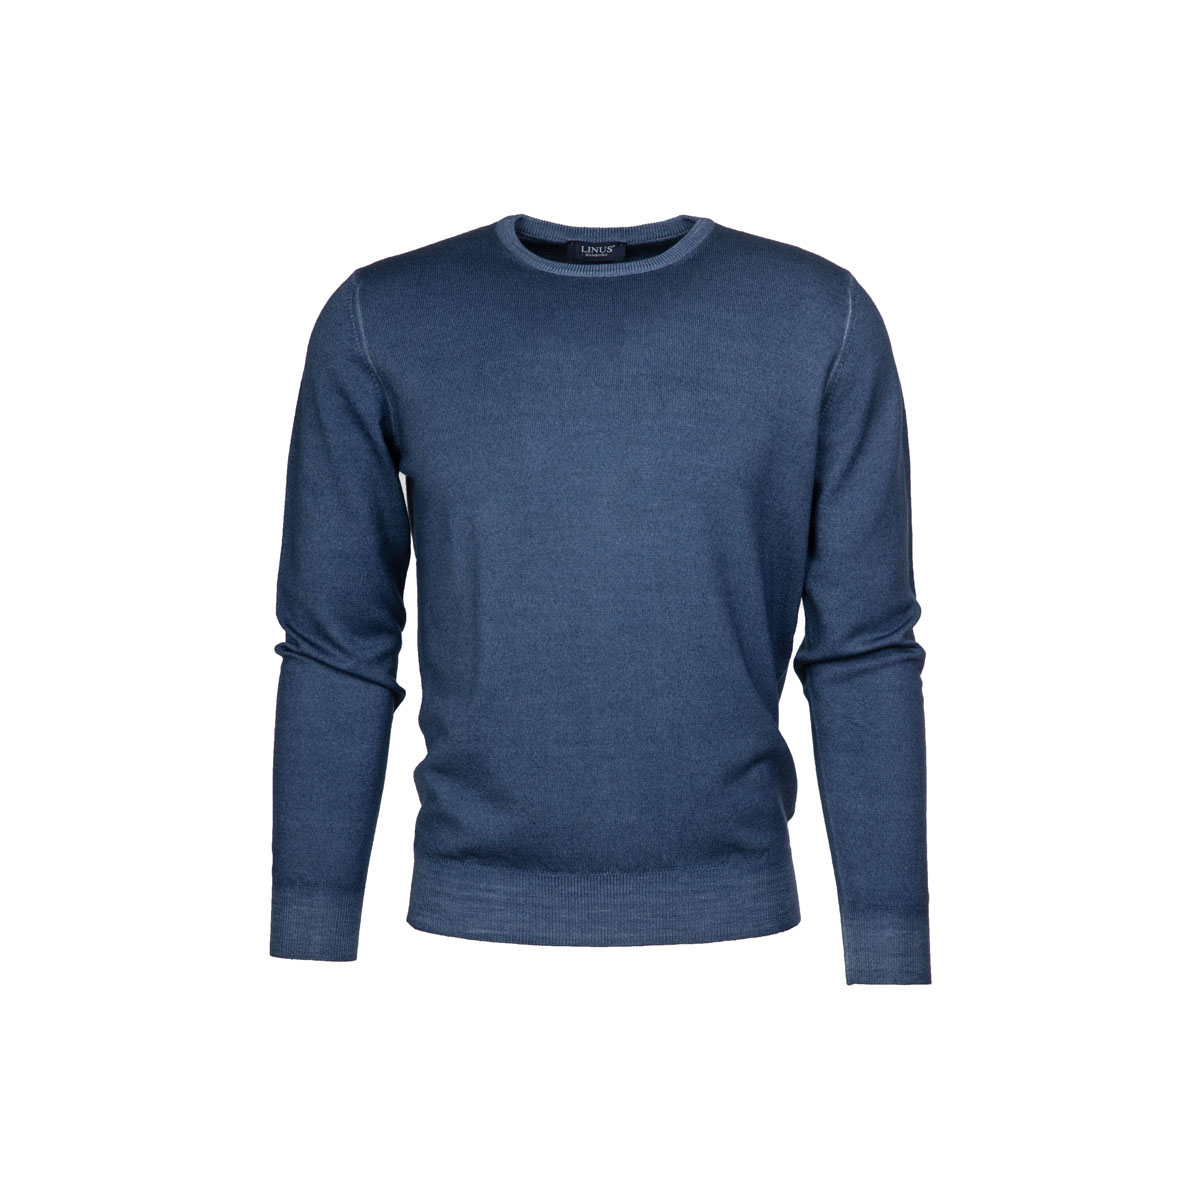 Blauer Pullover mit Abschlüsse und Nähte im lässigen Used-Look